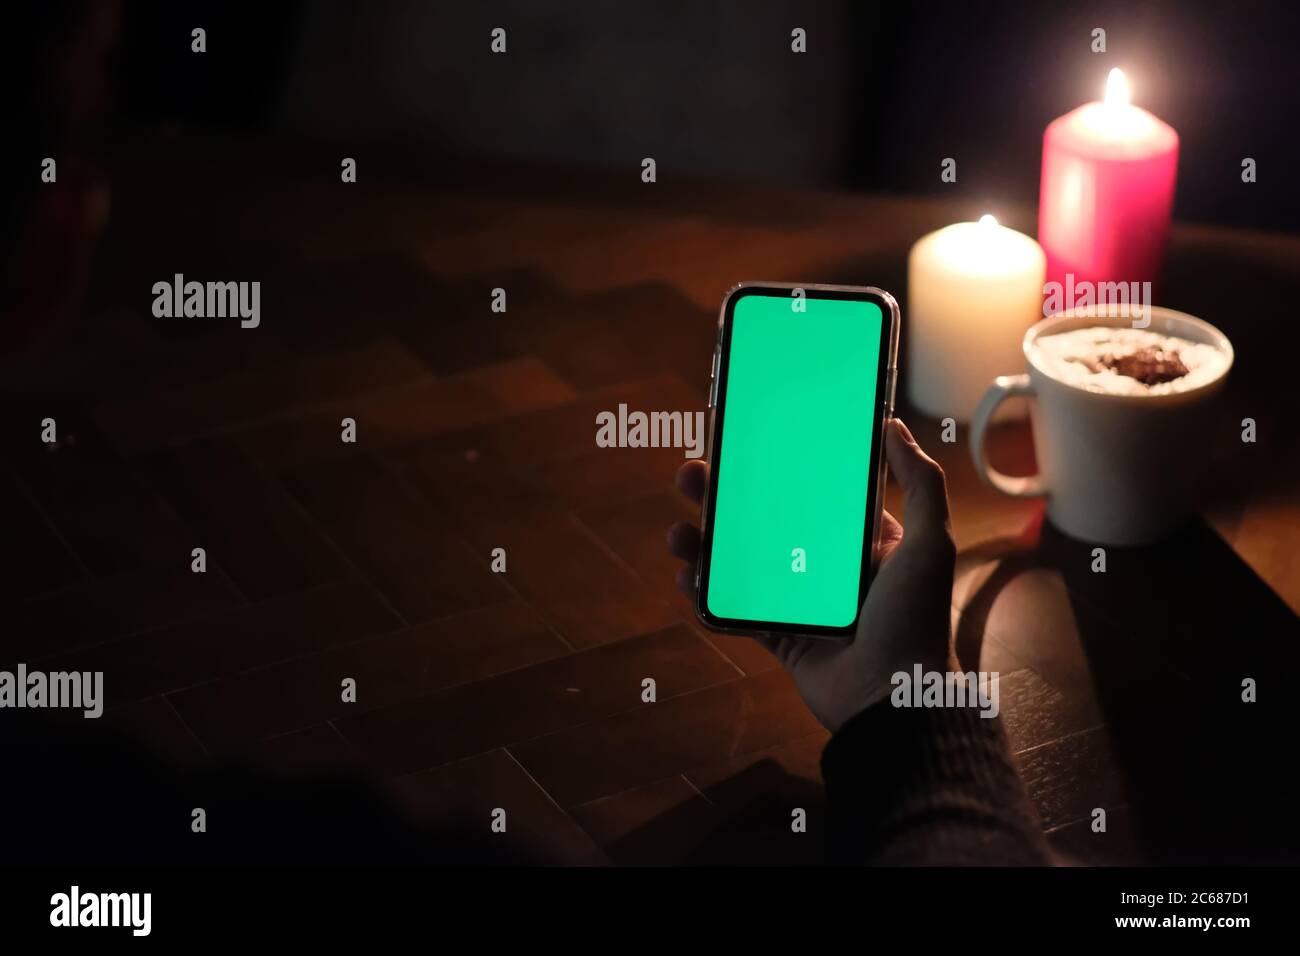 vista en primera persona de la mano sosteniendo un smartphone con pantalla verde. Luces de velas borrosas y una taza de café en una mesa de madera. Fondo oscuro Foto de stock